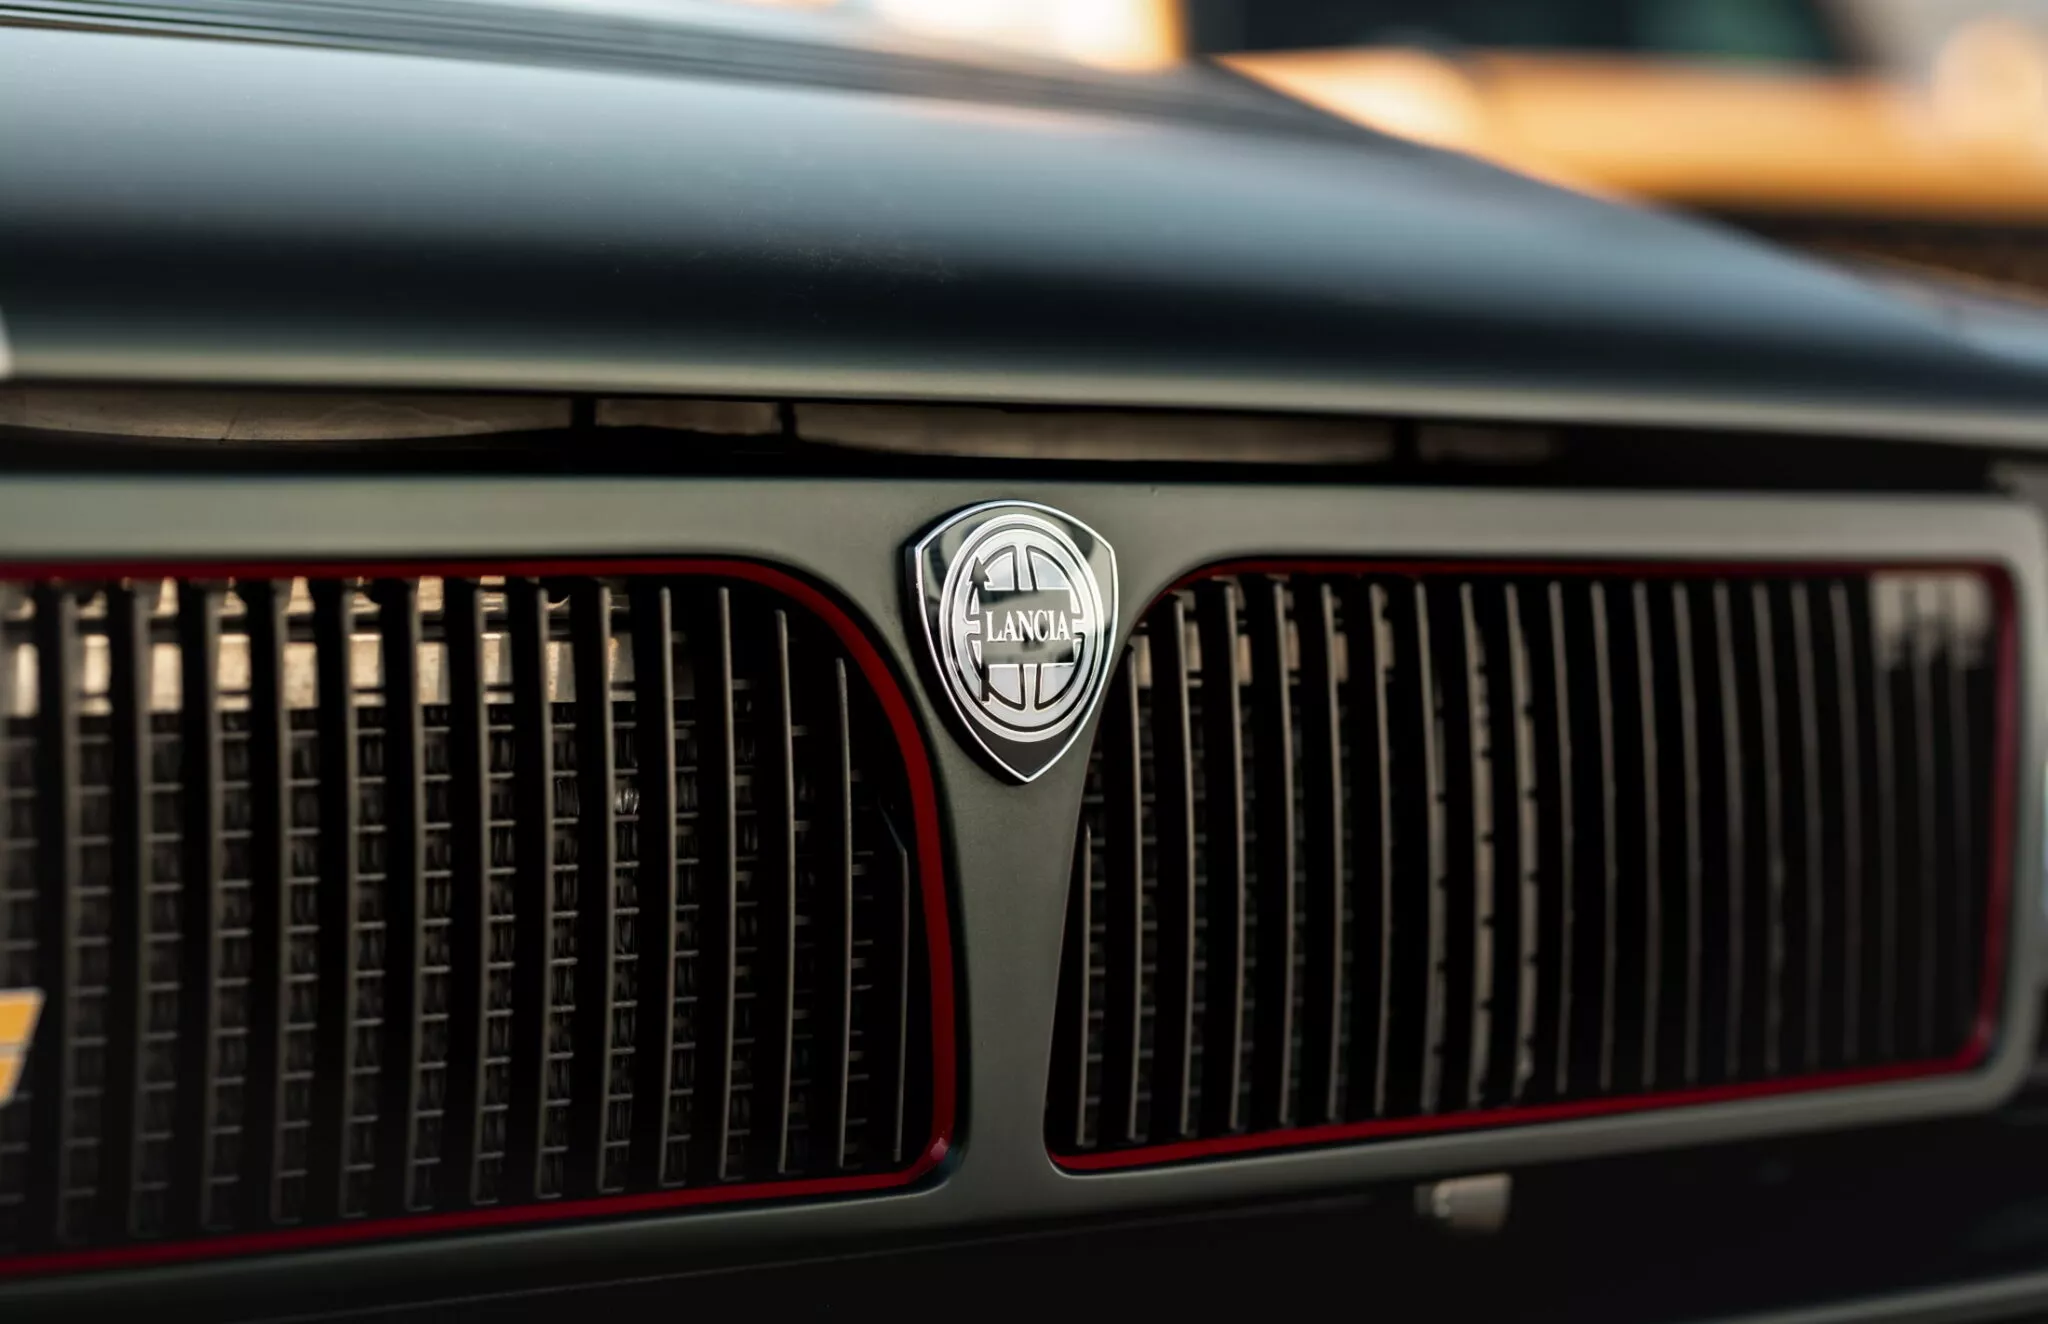 شركة مانهارت تكشف عن سيارة لانسيا كلاسيكية إيطالية تم تجديدها بالكامل وعرضها للبيع 9